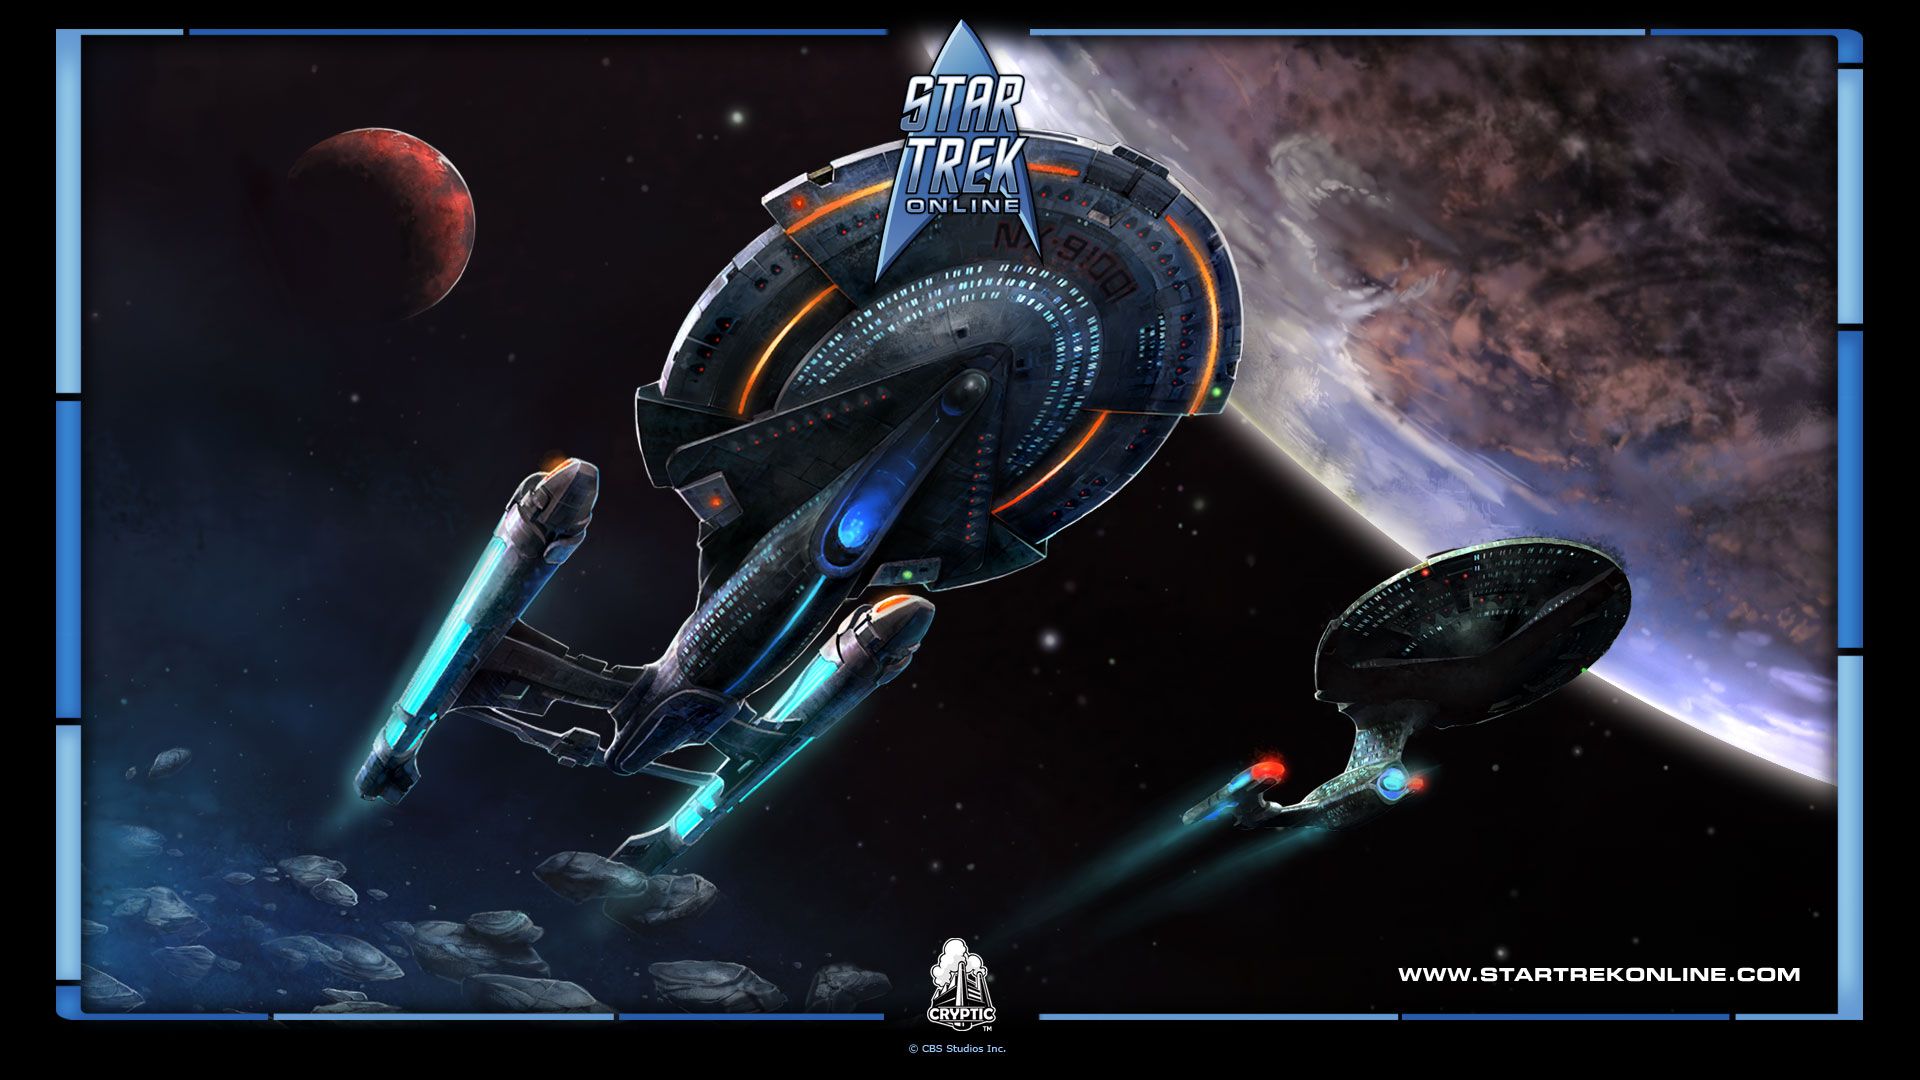 Star Trek Online Exclusive Hd Wallpapers 4335 | HD Pix